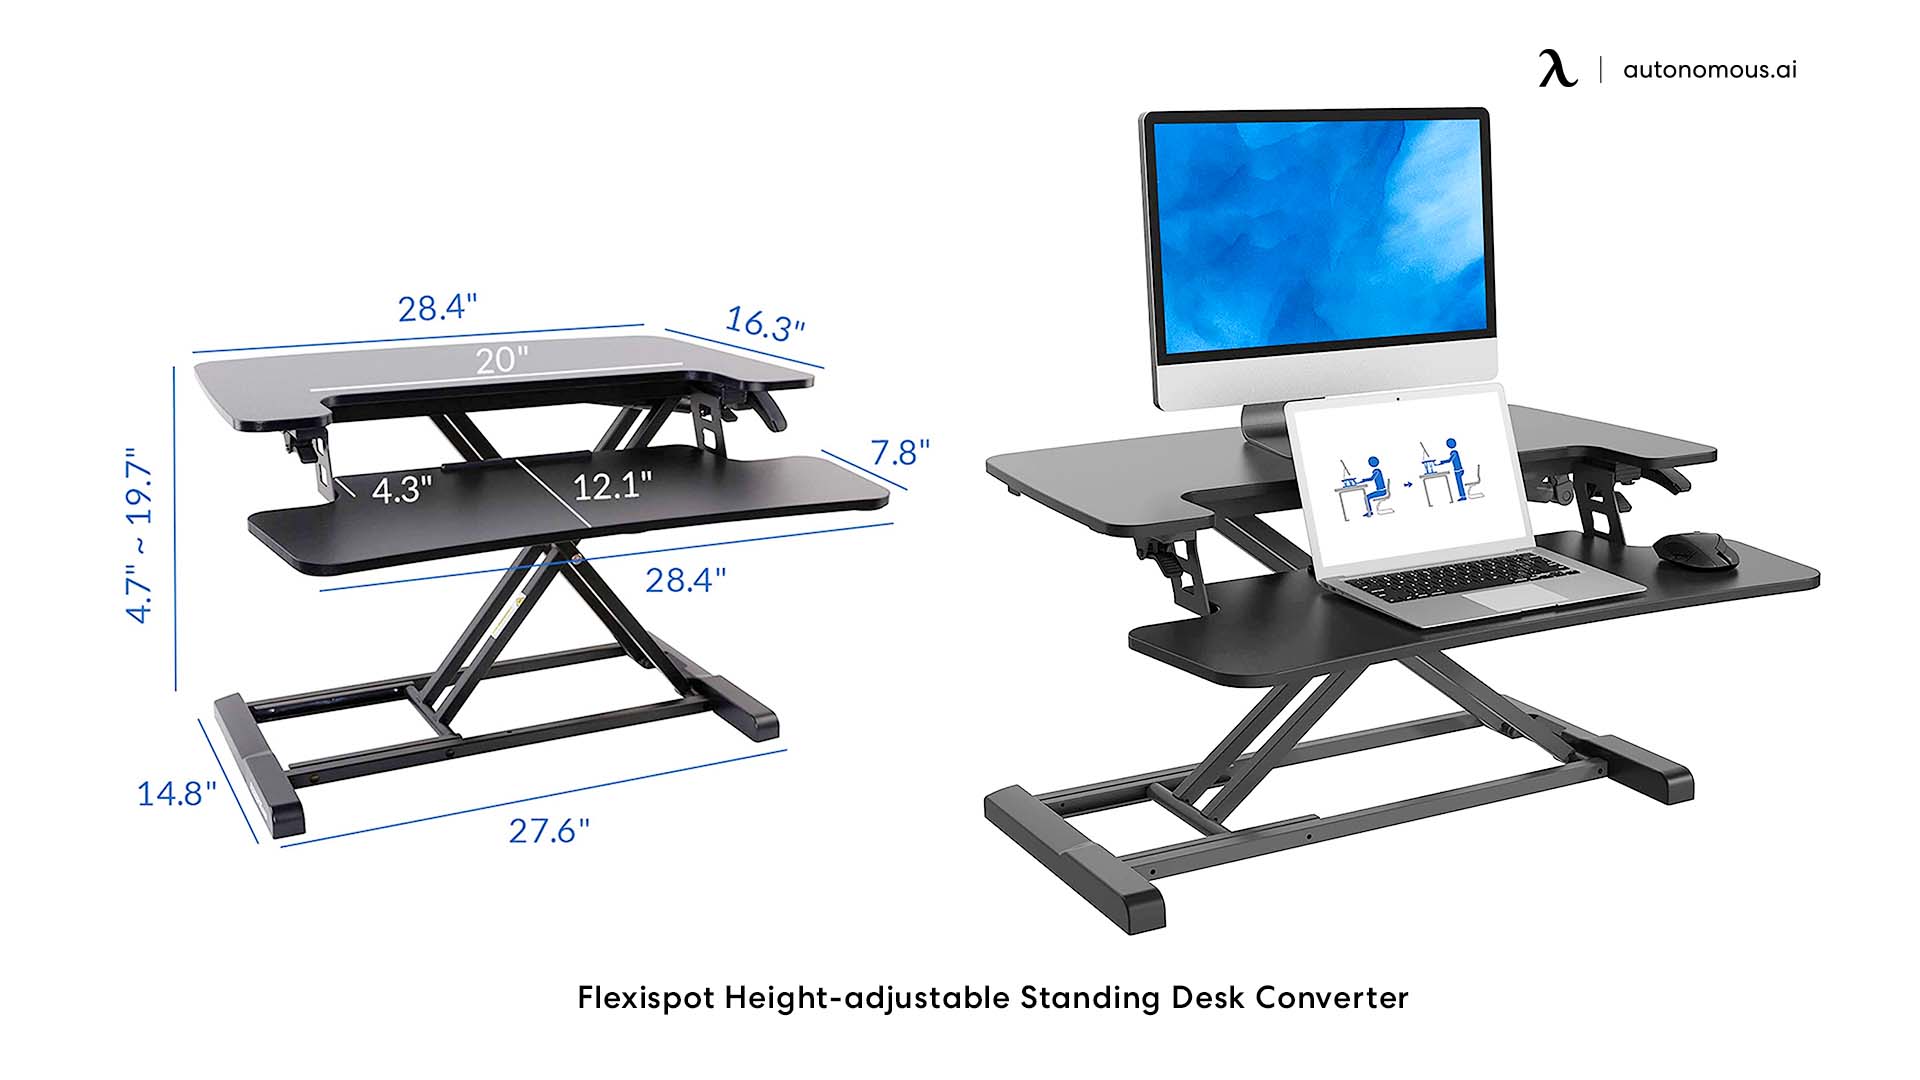 Flexispot tall desk